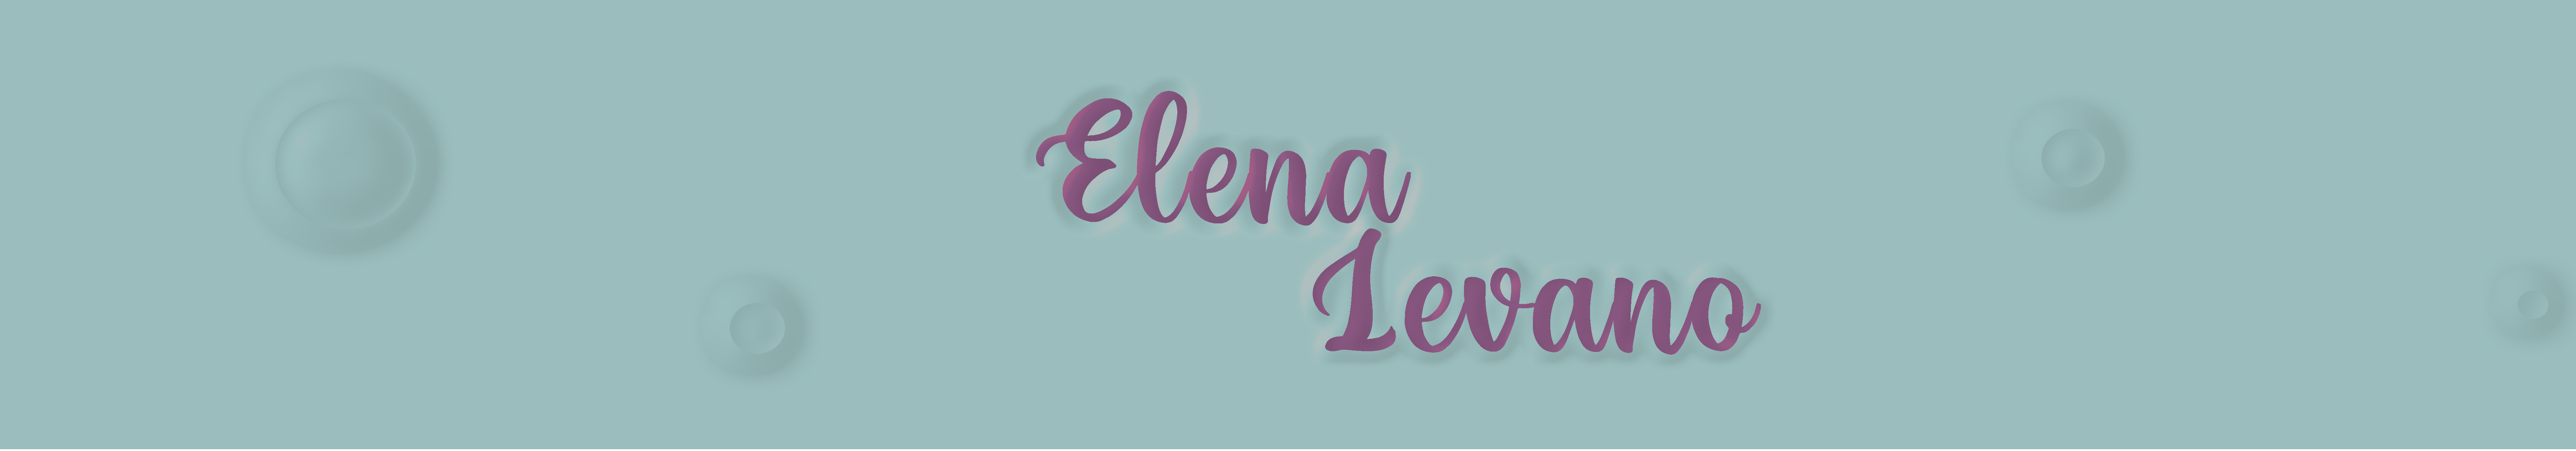 Elena Levano Romero's profile banner